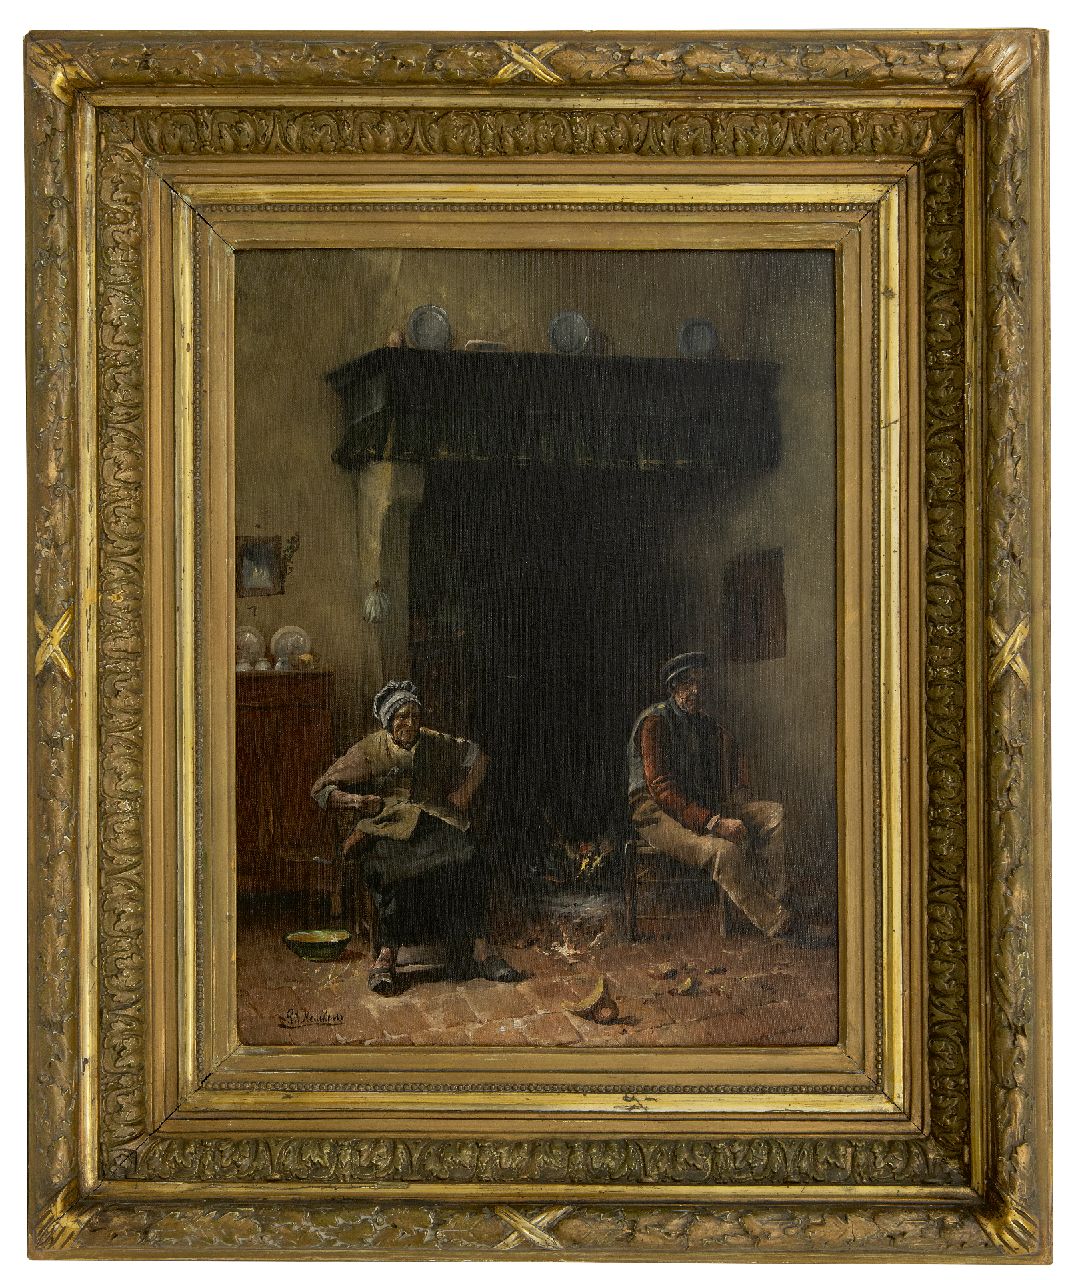 Neuckens P.J.  | Pierre Jules Neuckens | Schilderijen te koop aangeboden | De gebroken pot, olieverf op doek 48,7 x 39,2 cm, gesigneerd linksonder